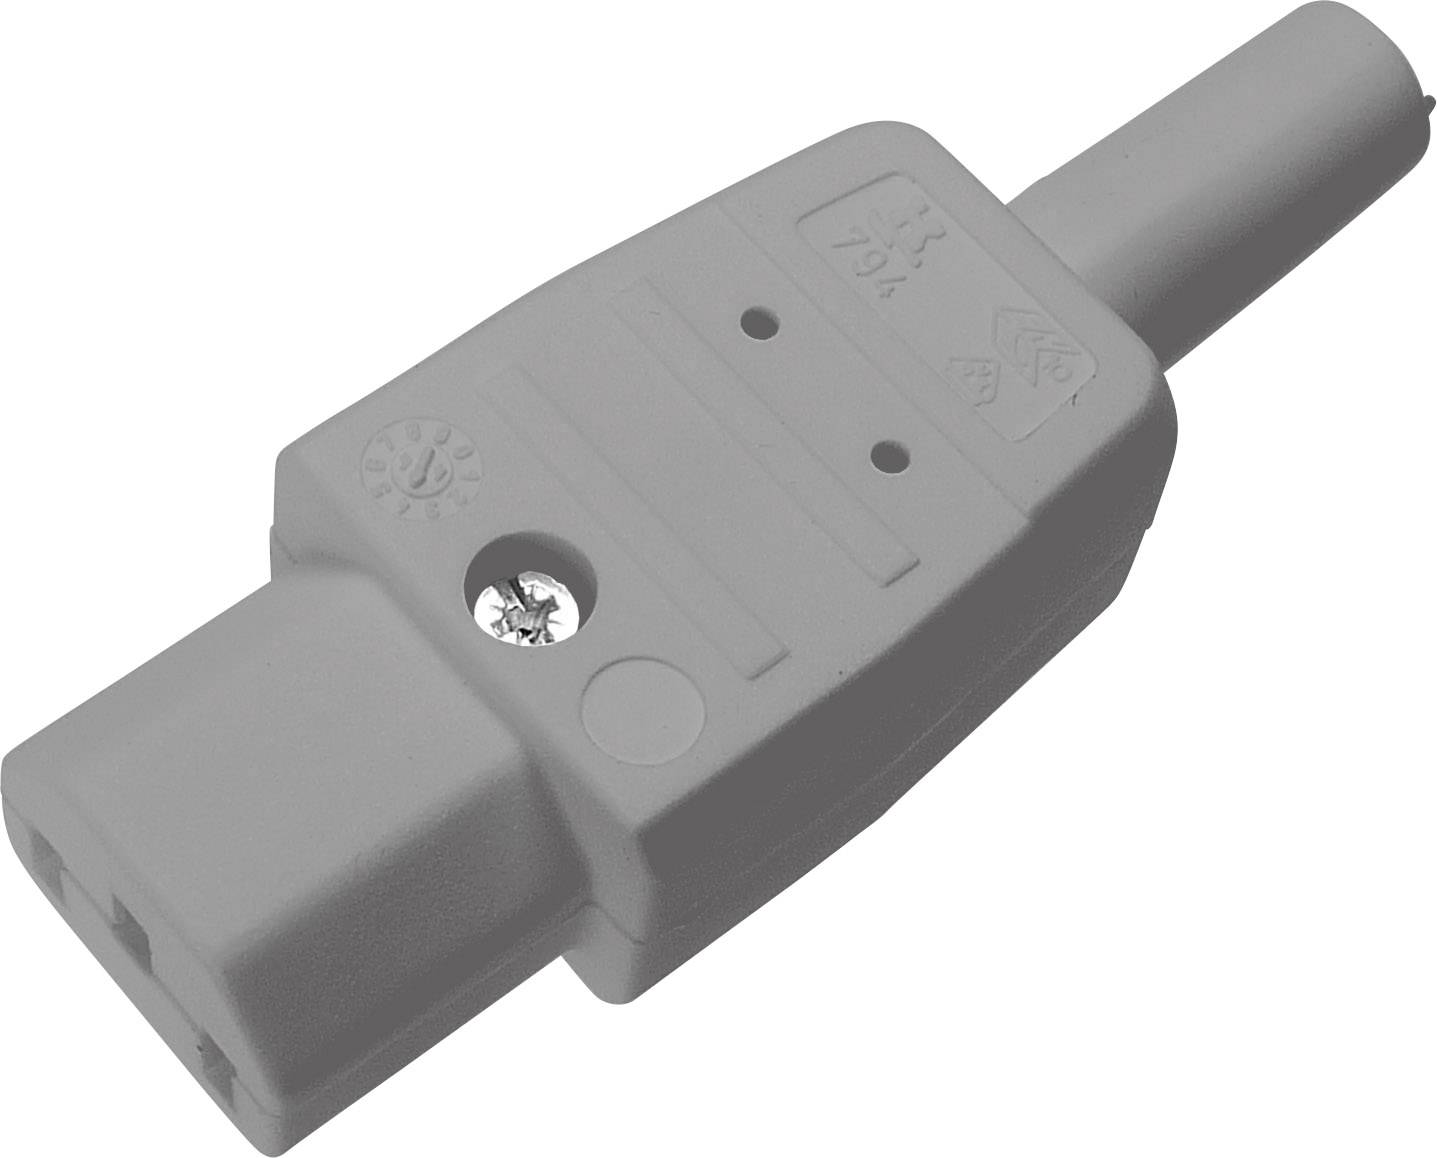 Síťová IEC zásuvka C13 Kaiser, 250 V, 10 A, šedá, 794/gr